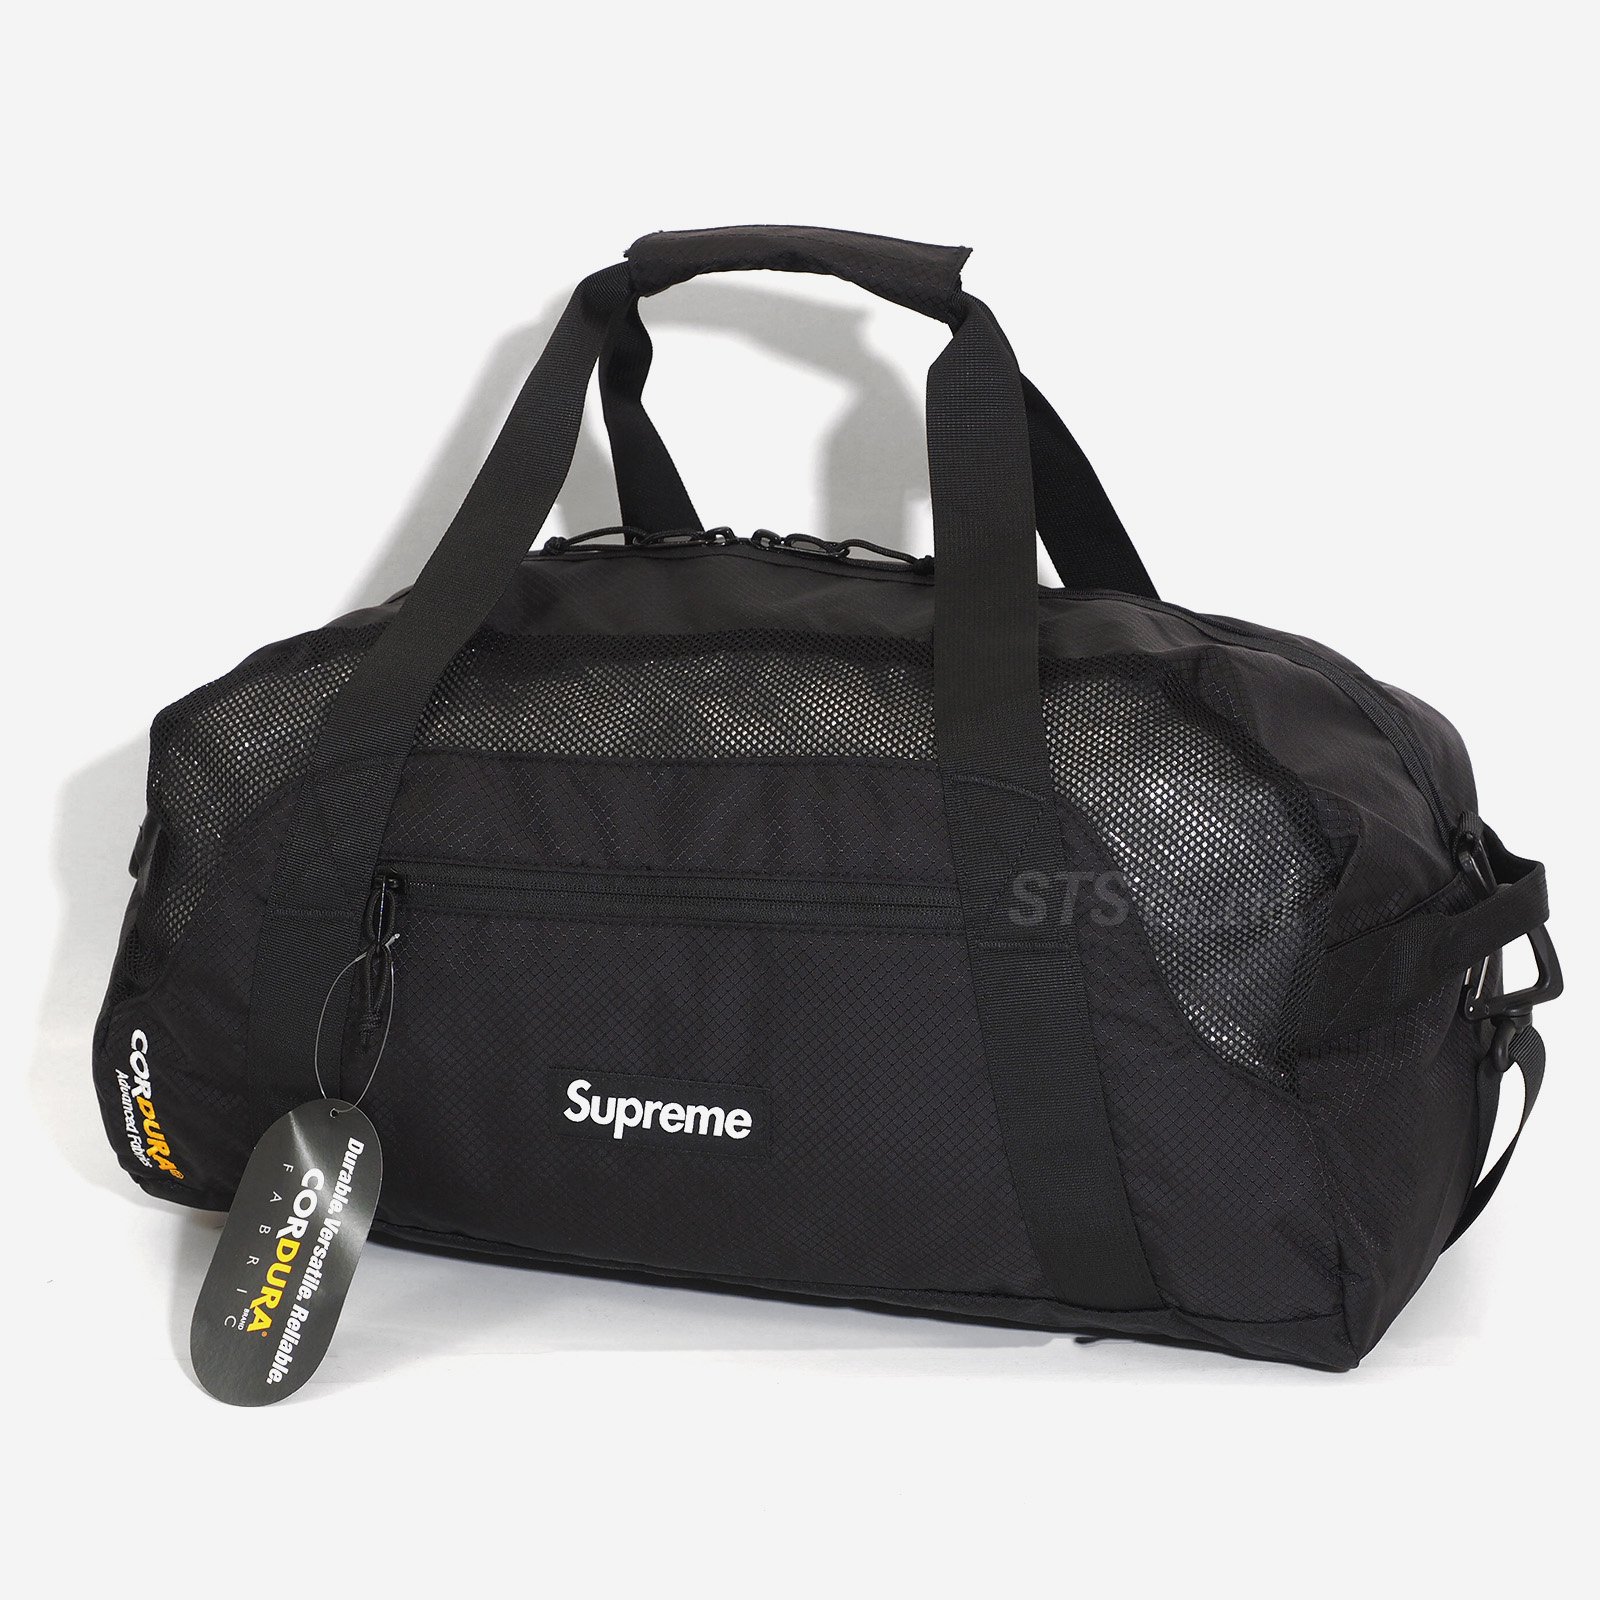 Supreme - Duffle Bag - ParkSIDER